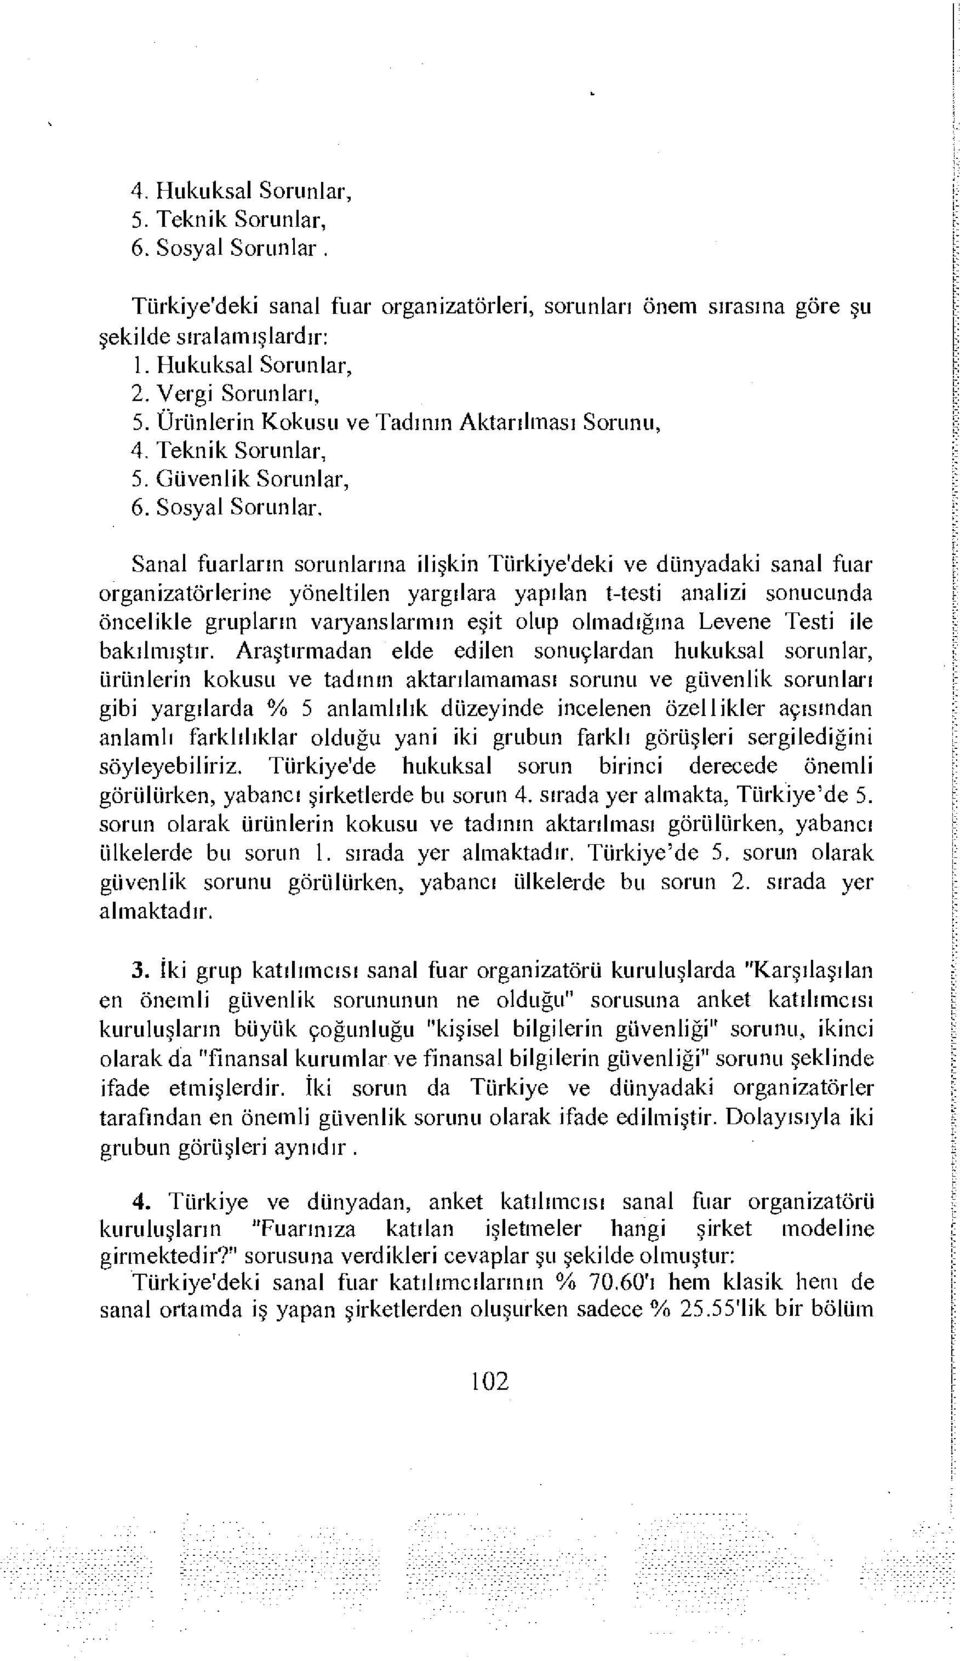 Sanal fuarların sorunlarına ilişkin Türkiye'deki ve dünyadaki sanal fuar organizatörlerine yöneltilen yargılara yapılan t-testi analizi sonucunda öncelikle grupların varyanslarmın eşit olup